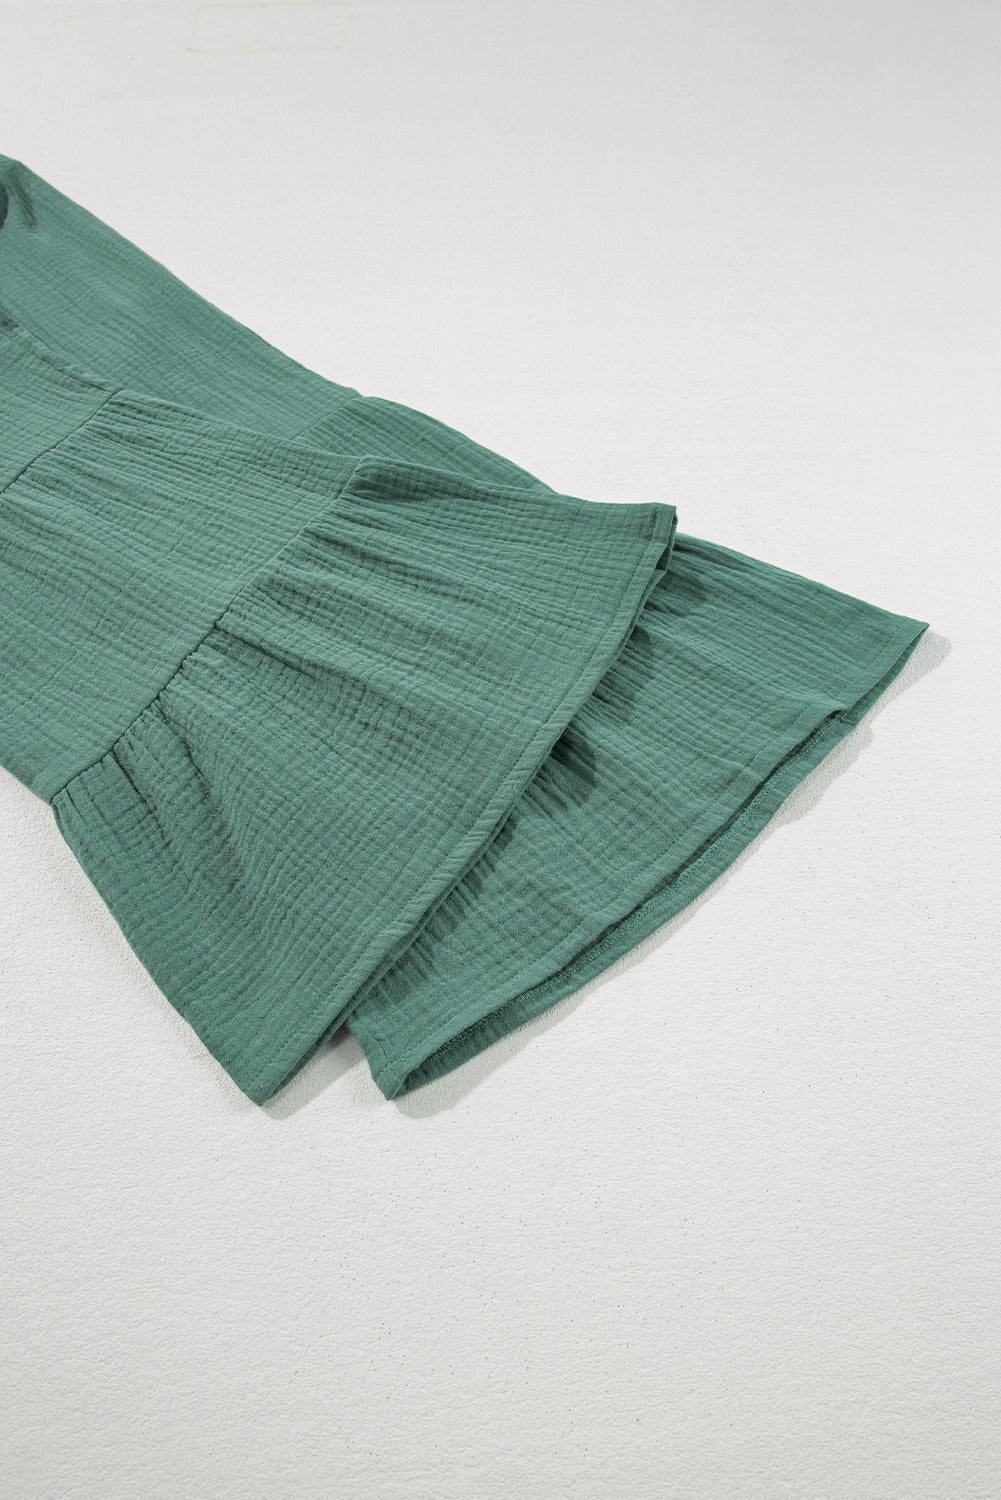 Green Textured High Waist Ruffled Bell Bottom Pants